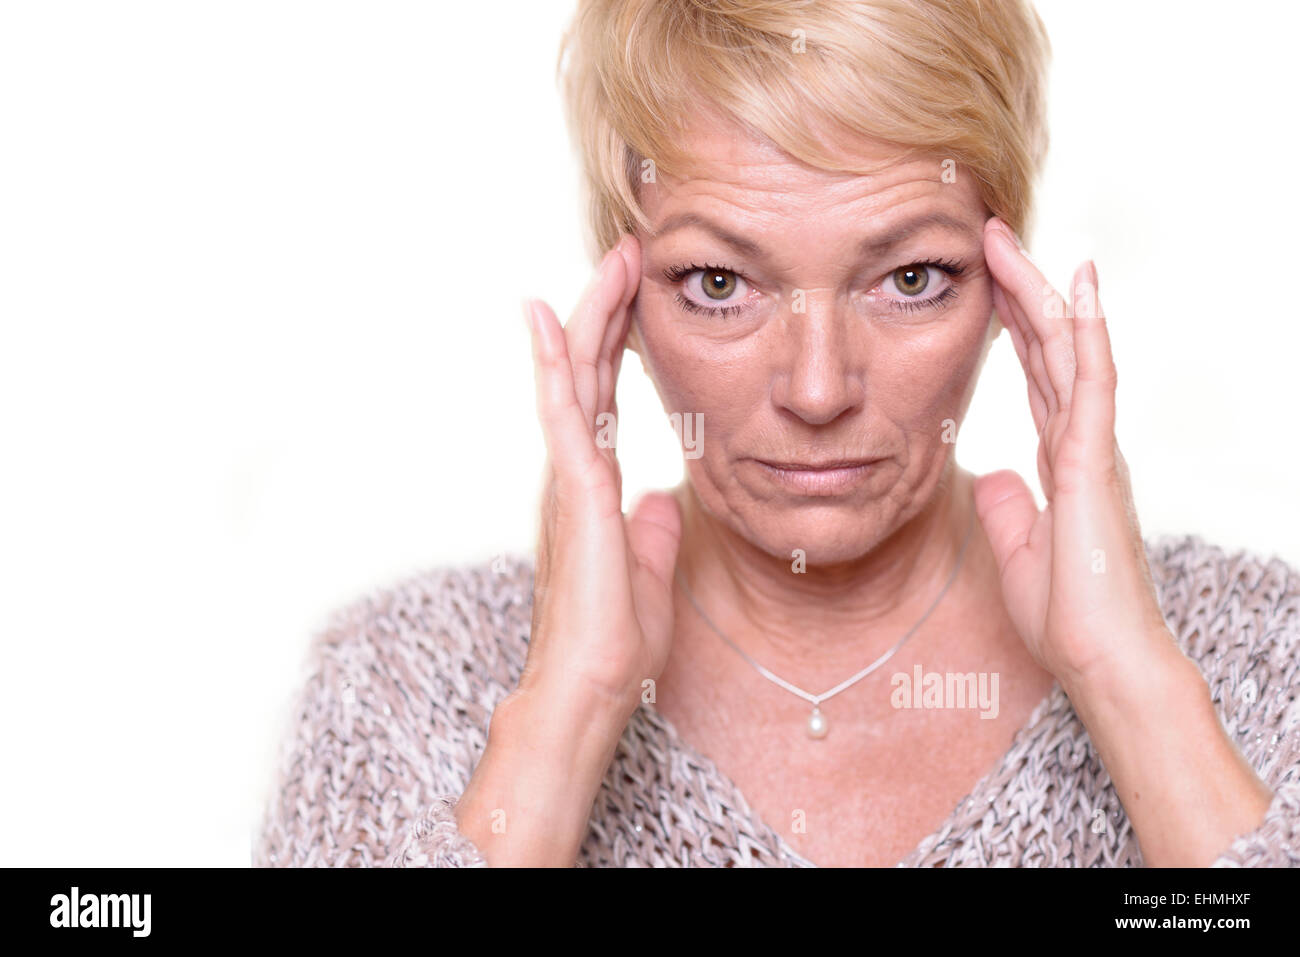 Attraktive ältere blonde Frau mit einem weit aufgerissenen Augen Ausdruck und ihre Brille auf dem Kopf, Kopfschmerzen oder Migräne angibt Stockfoto